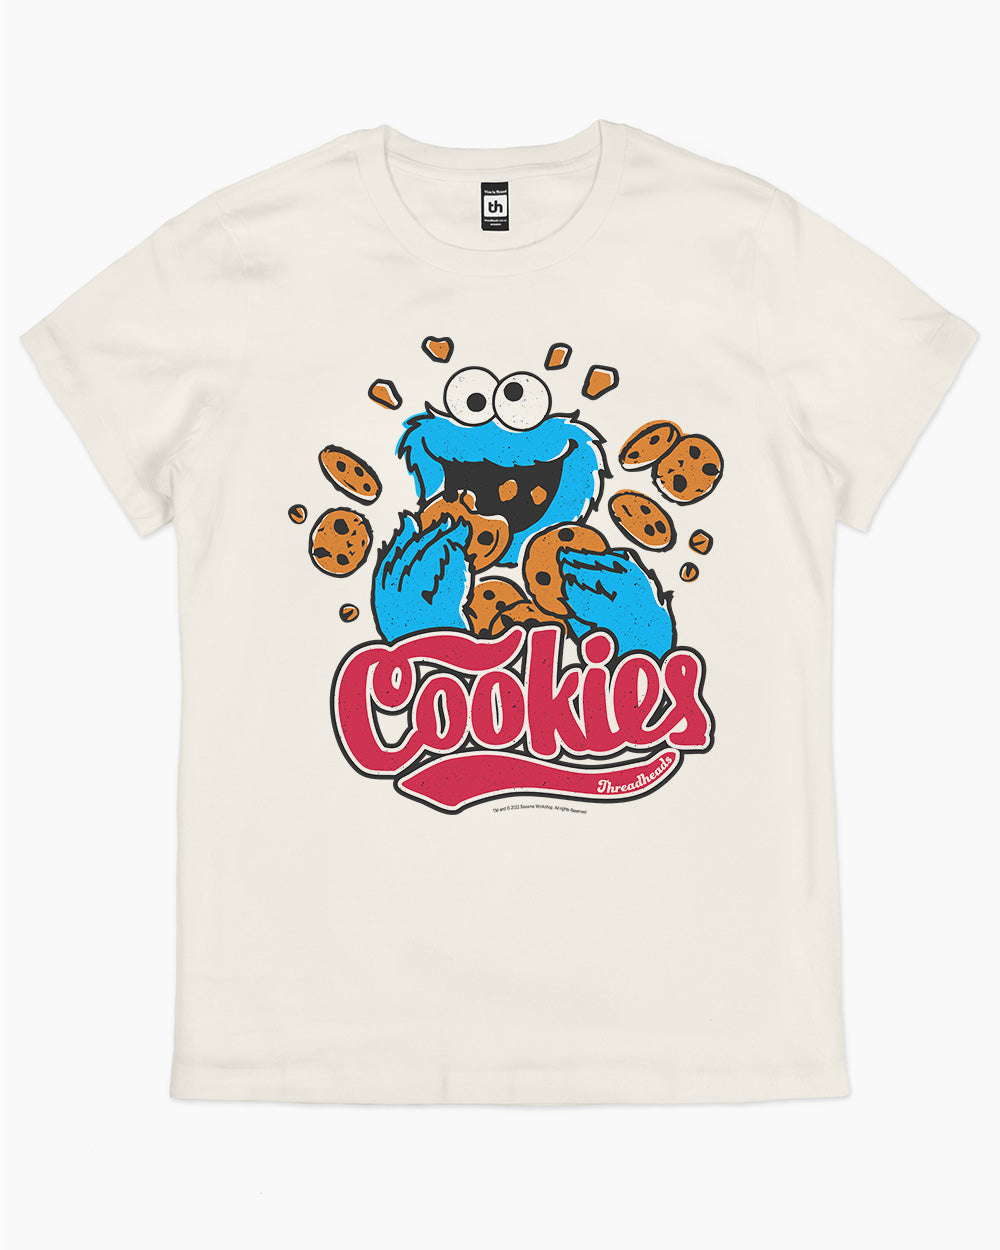 Cookie Monster Cookies T-Shirt, Official Sesame Street Merch